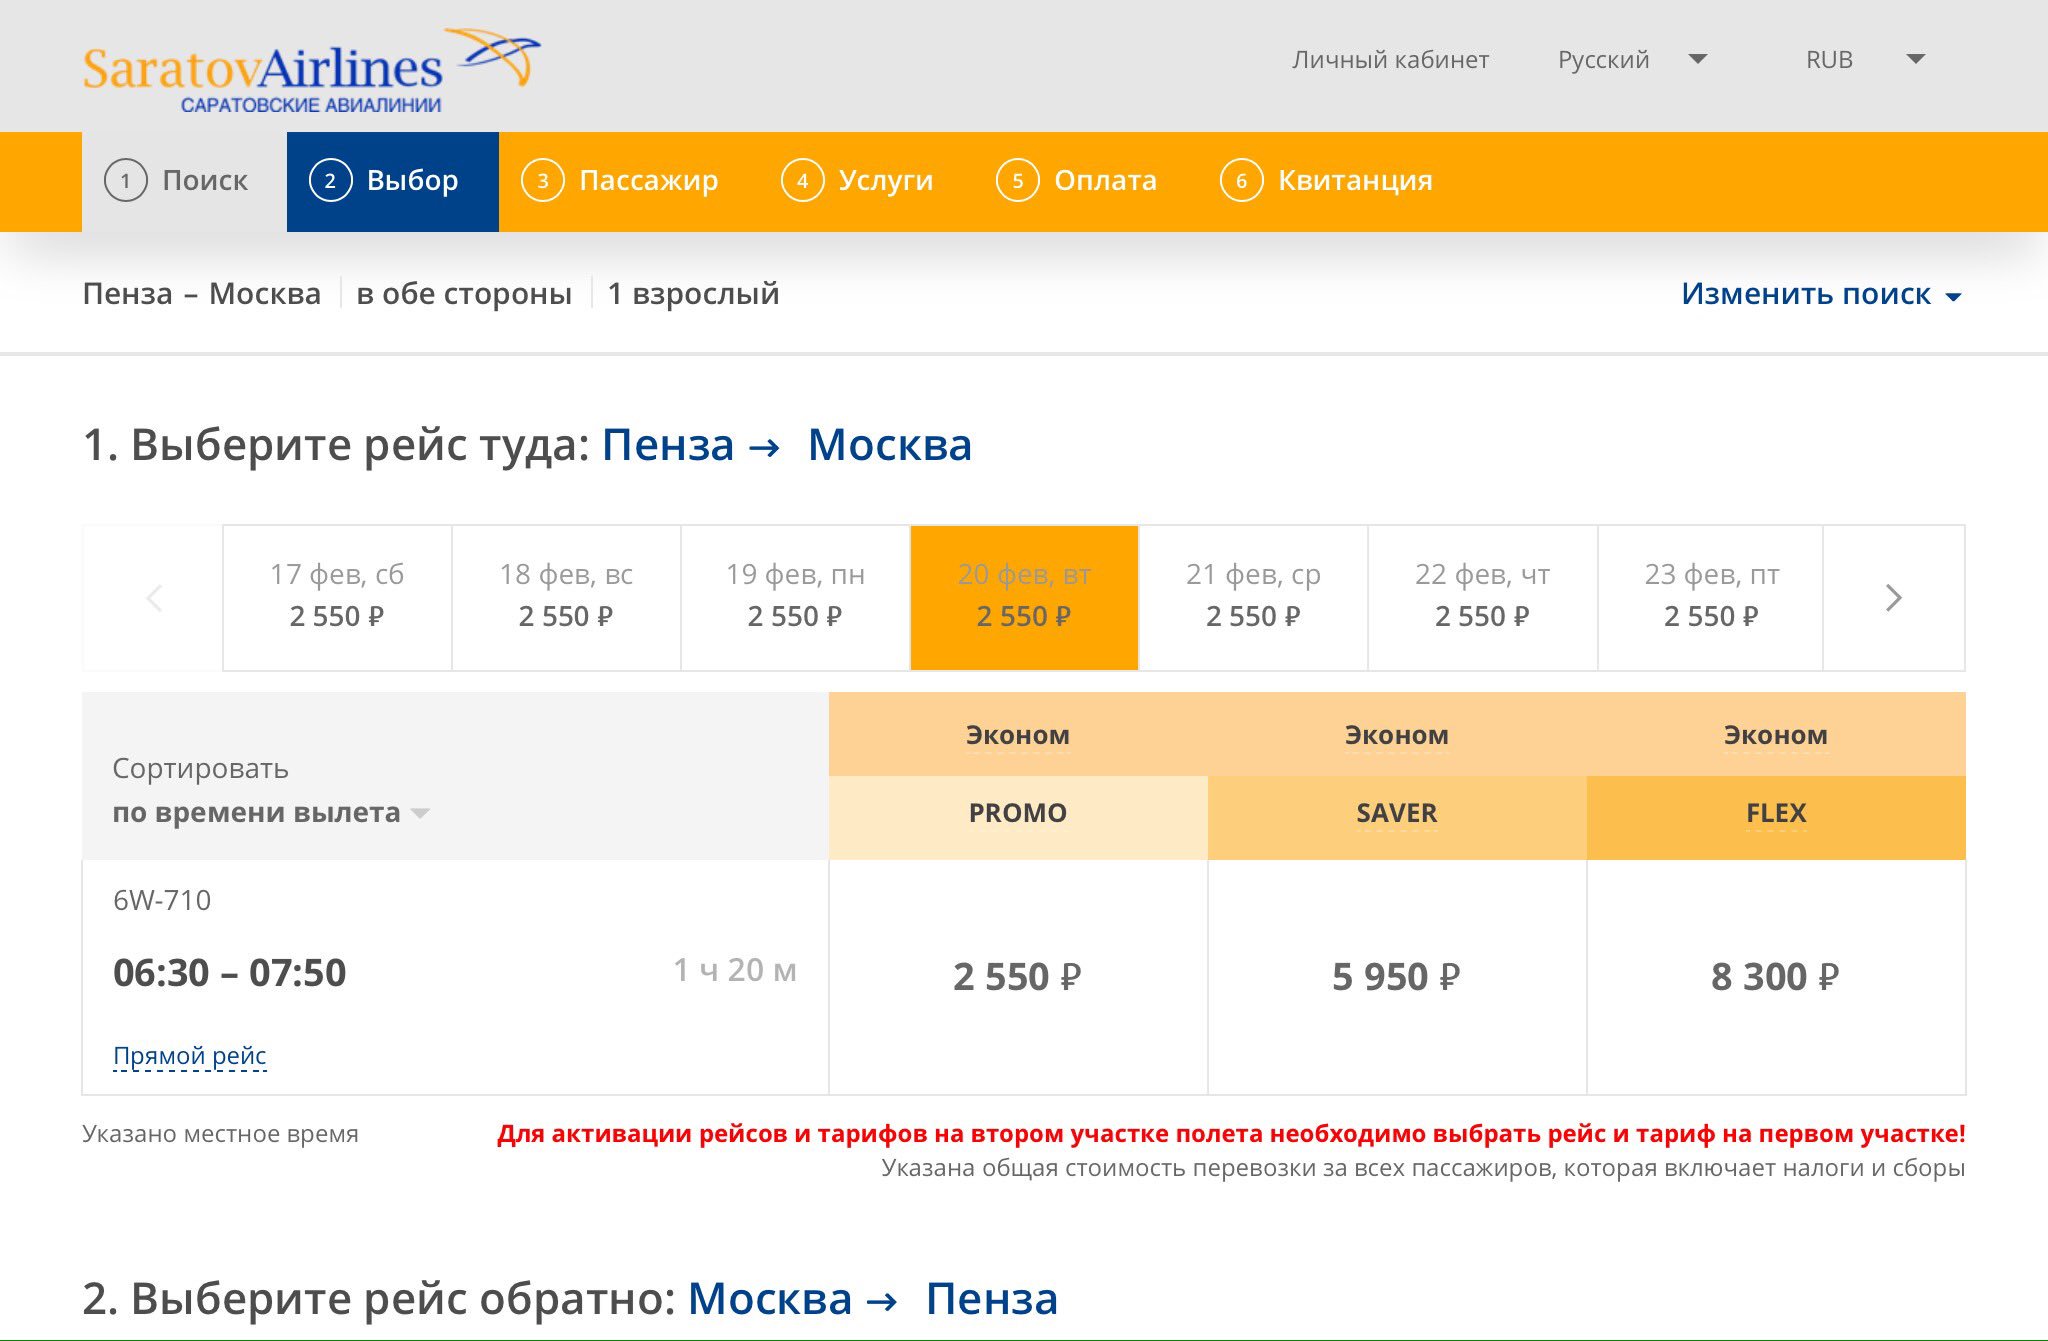 Билеты самолет пенза москва цена авиабилета свердловск владивосток